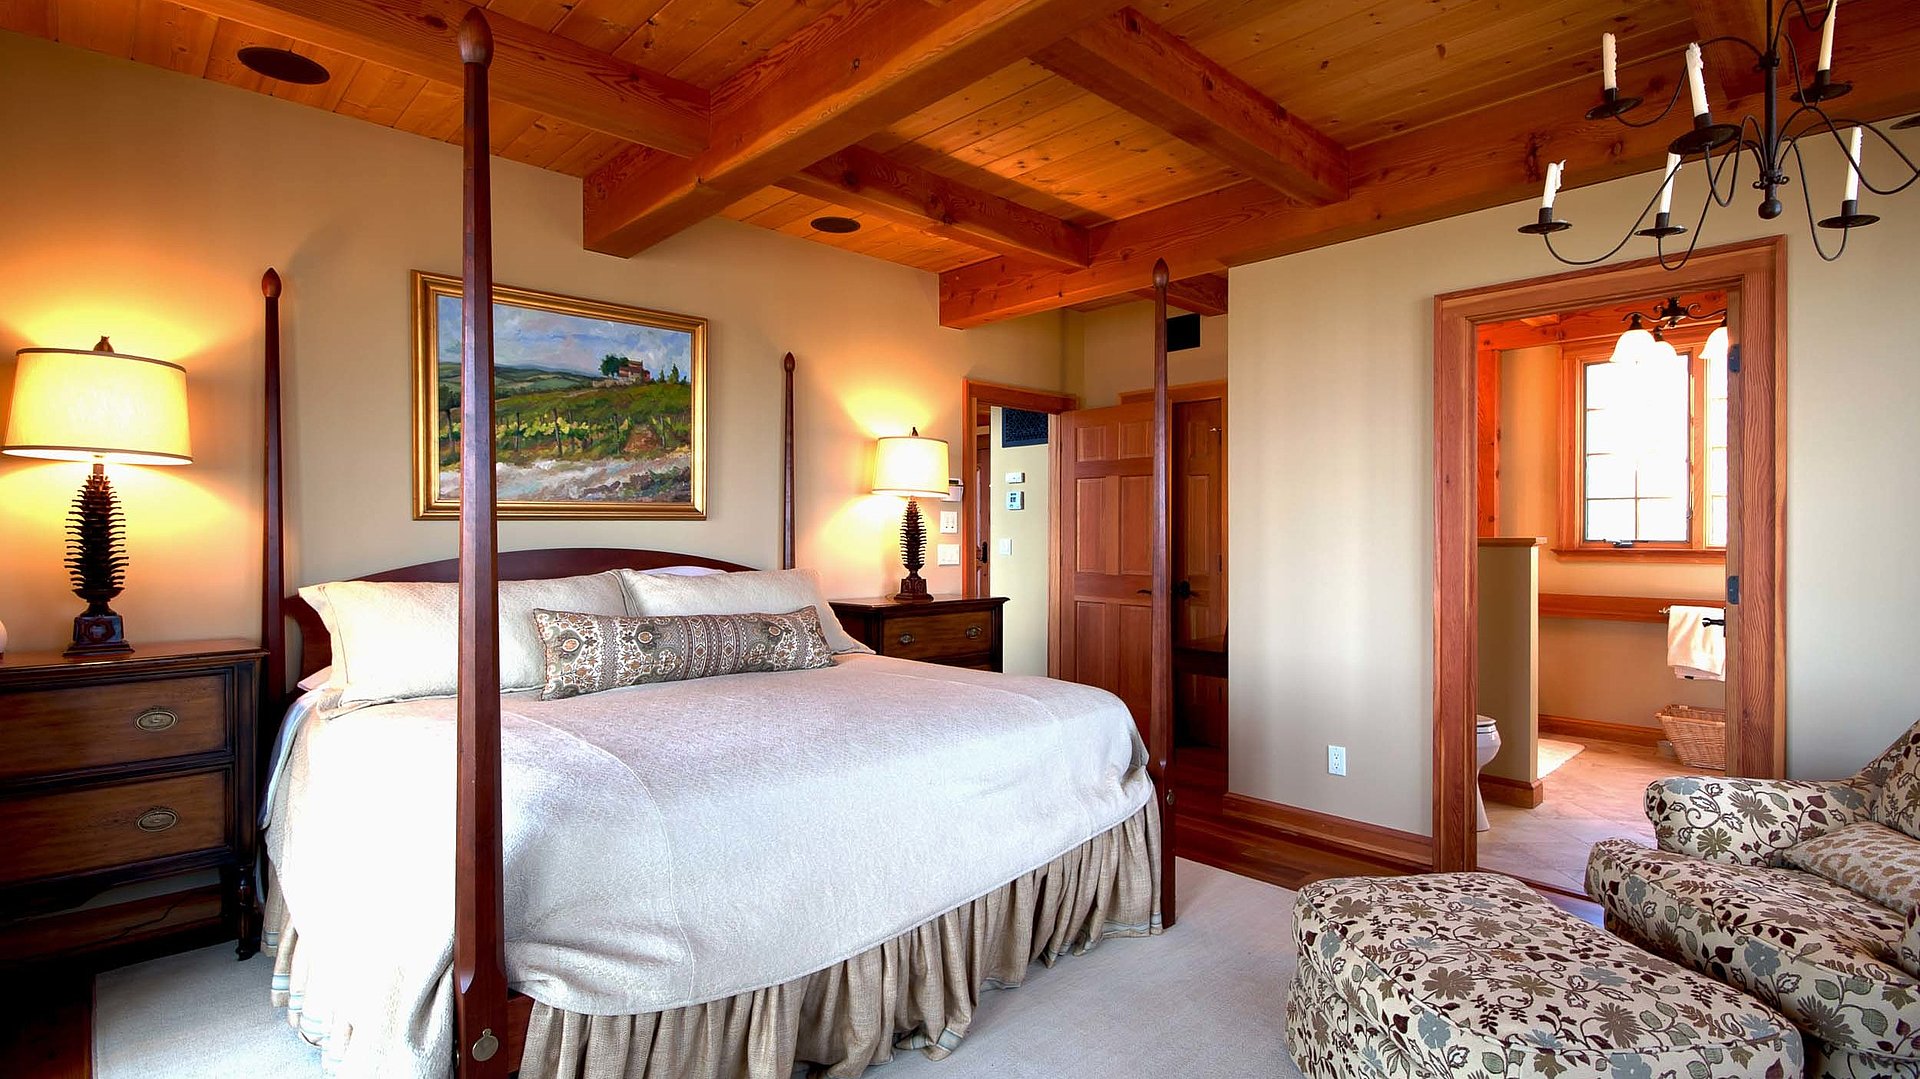 Exklusive Ferienwohnungen in Oberbayern - sehr ordentliches Hotelzimmer mit großem Bett, warmer Nachtlampe und Wandgemälde